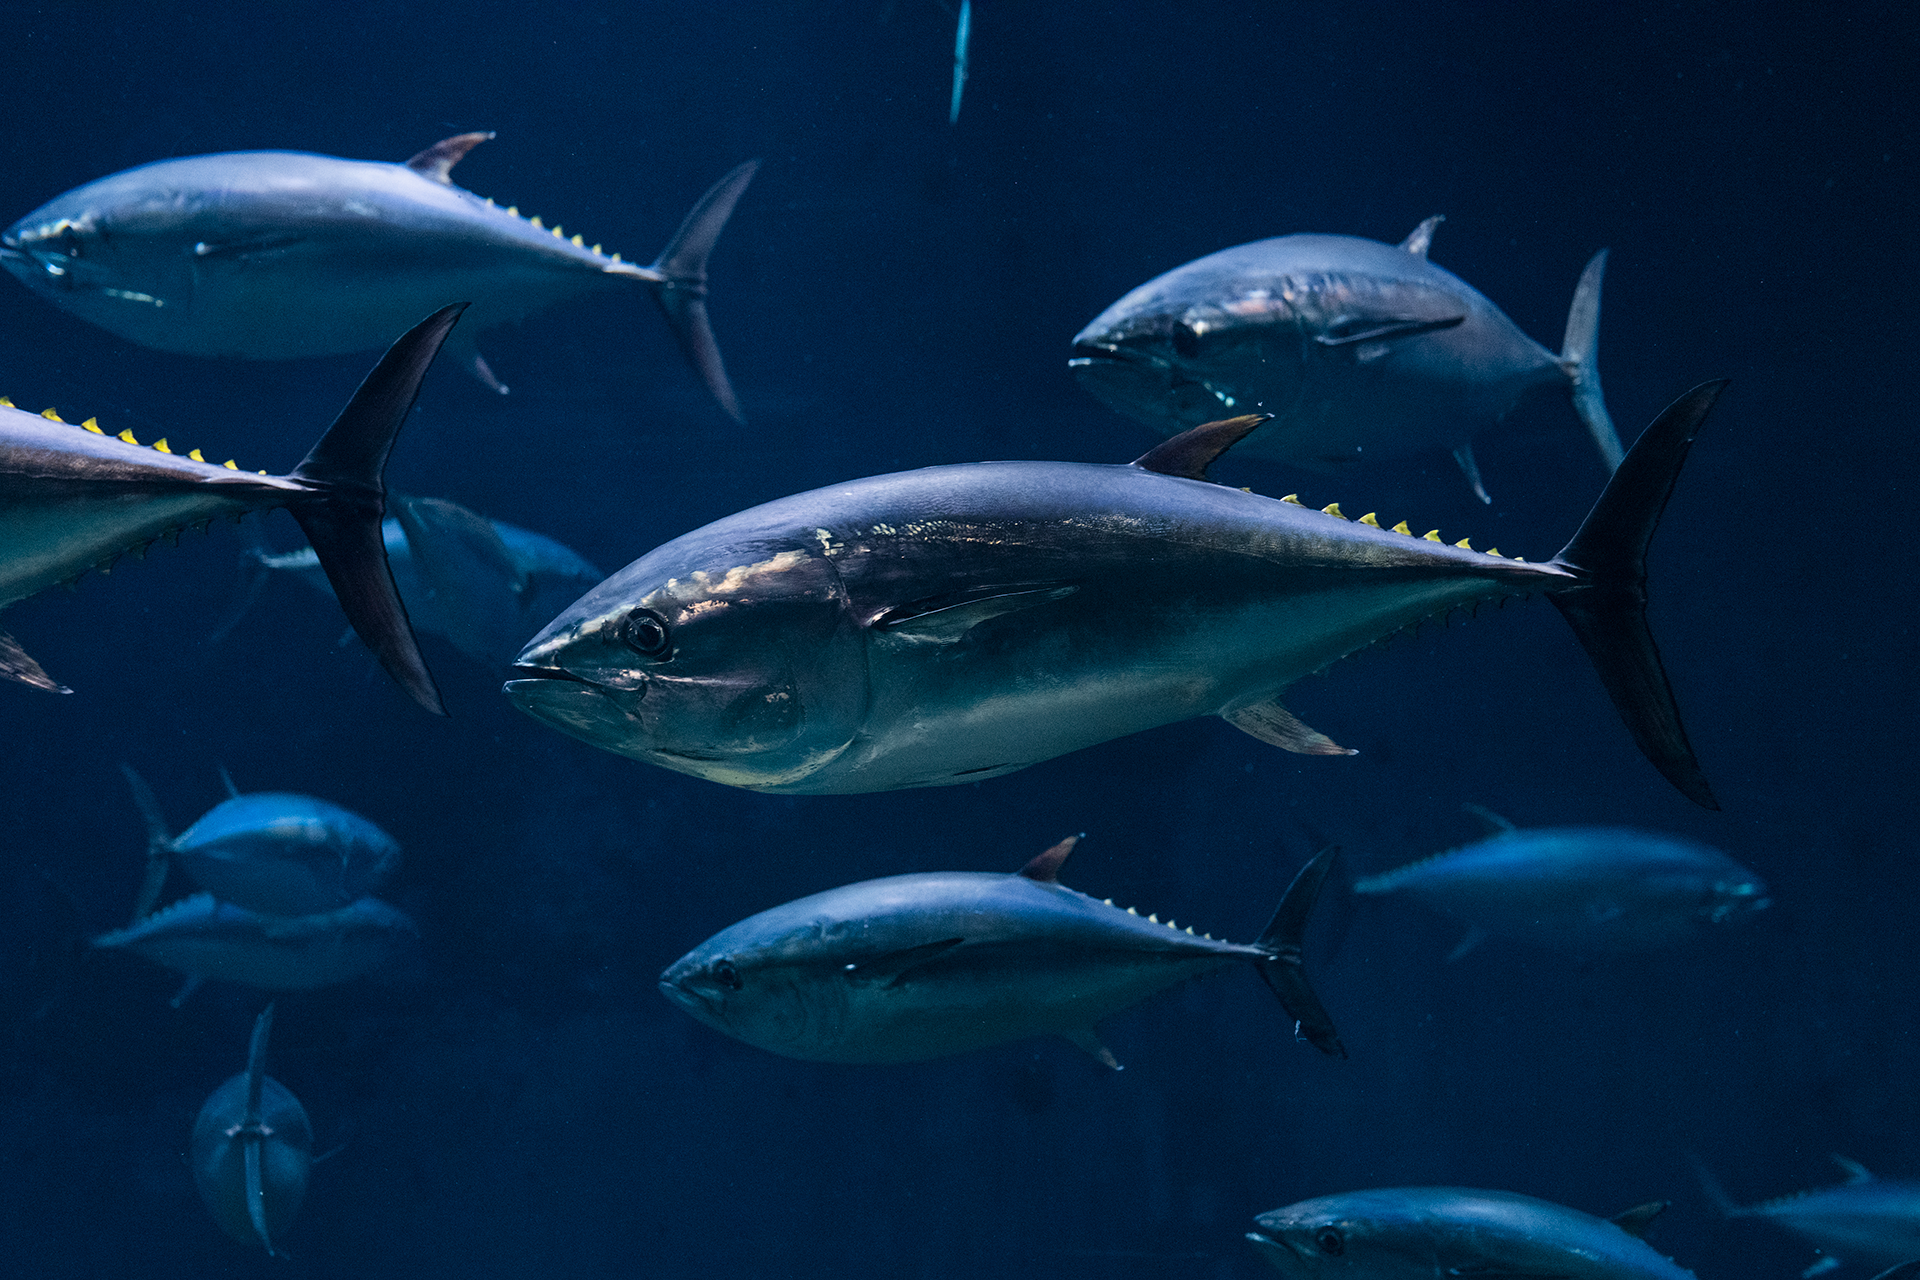 El atún rojo habita en el Atlántico Norte y sus mares adyacentes, sobre todo en el mar Mediterráneo. La sobre explotación lo está poniendo en peligro